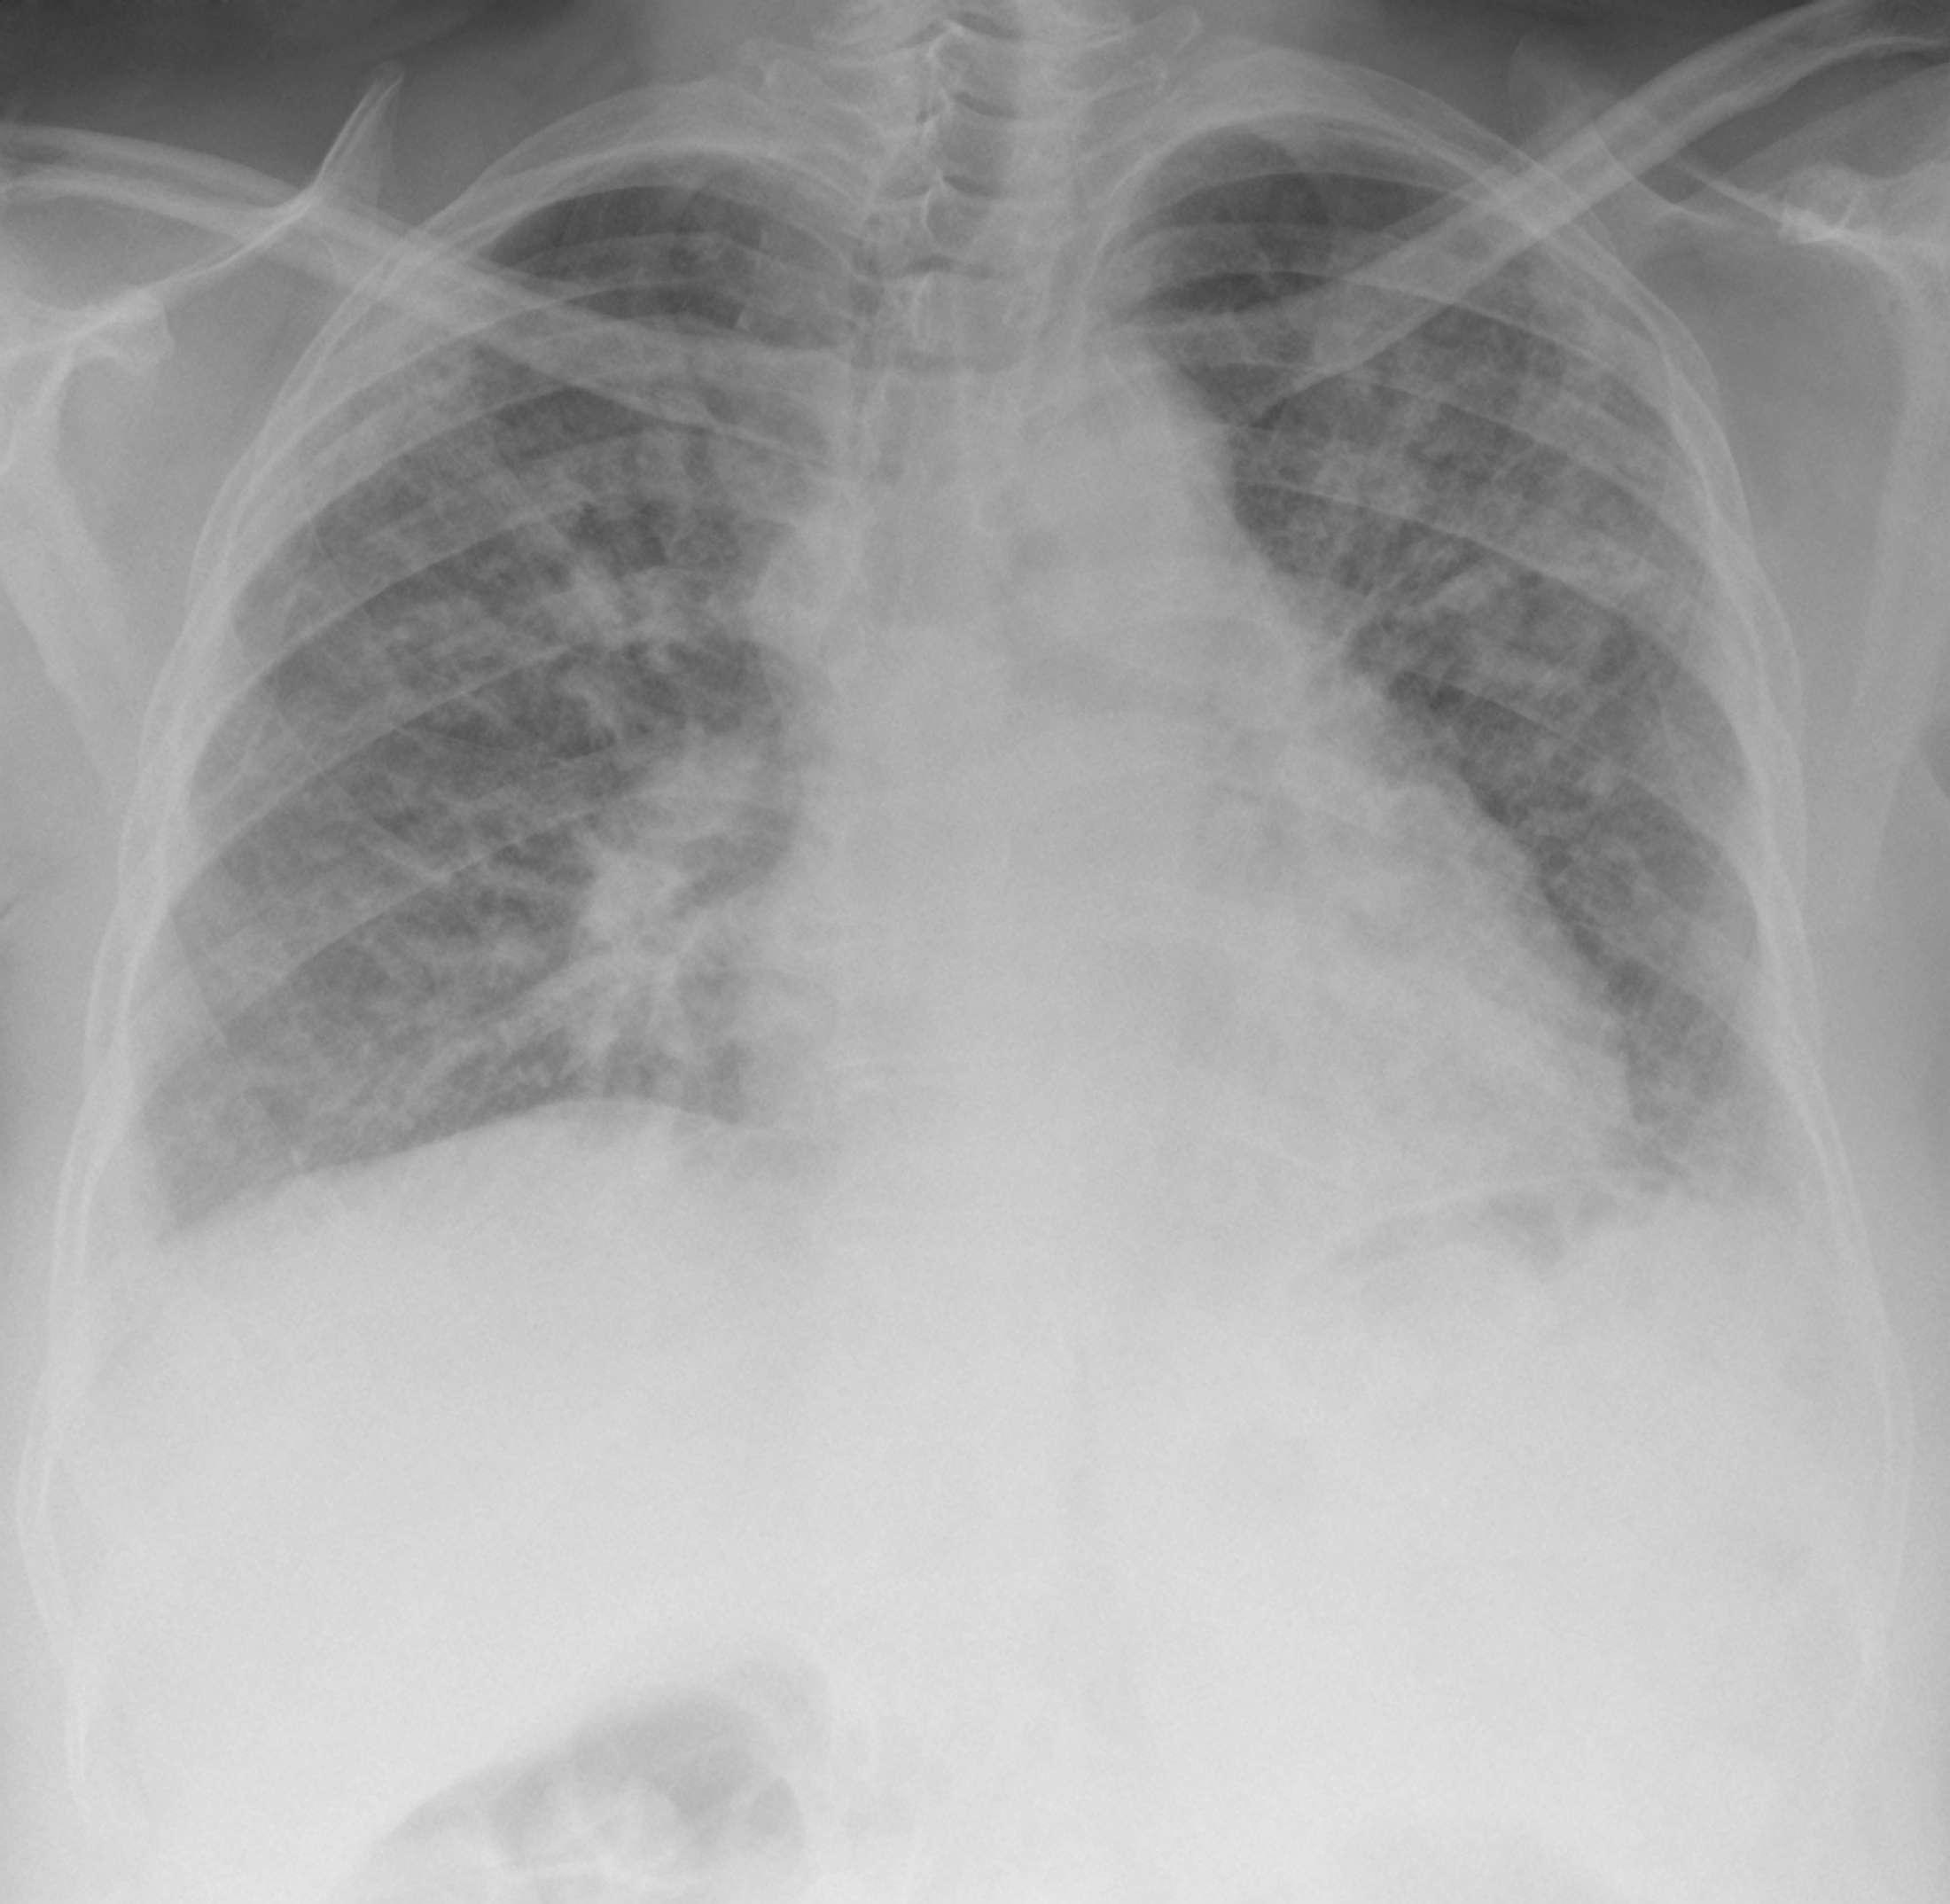 Digitales Röntgenthorax, das ein ausgedehntes retikuläres Muster und ein geschrumpftes Lungenvolumen aufgrund einer schweren Lungenfibrose zeigt.